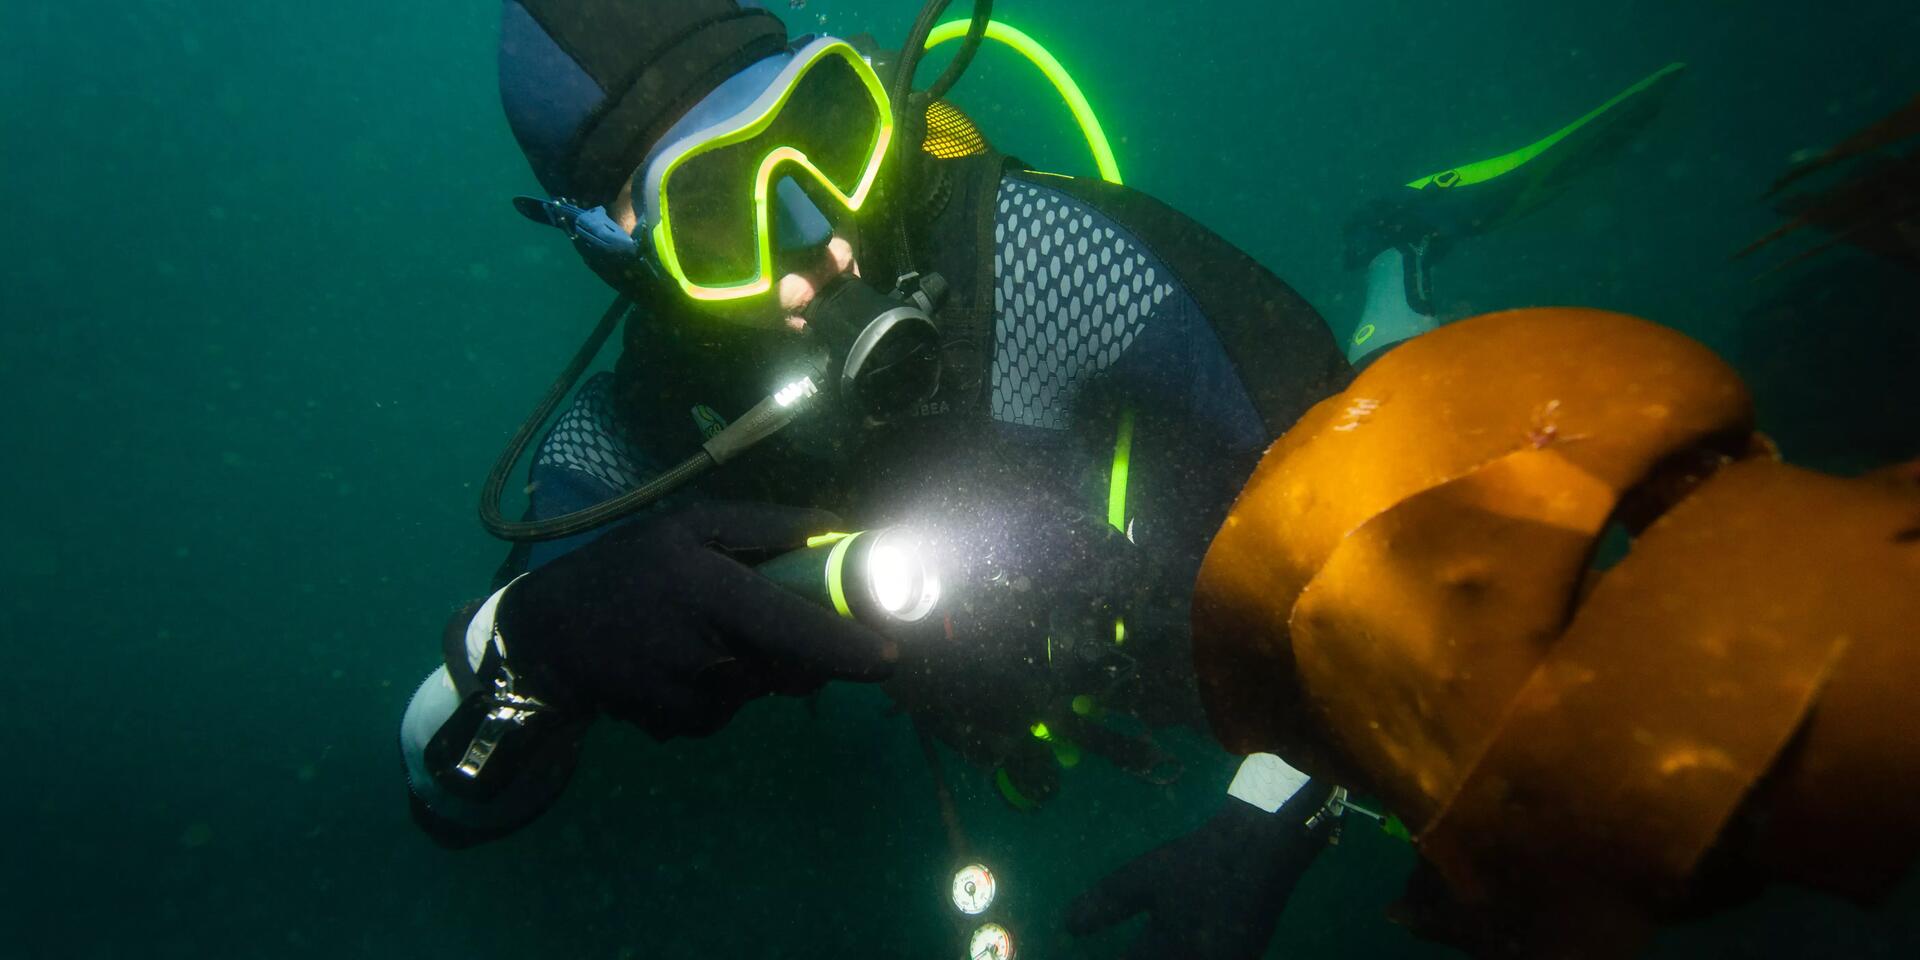 mężczyzna nurkujący w masce i skafandrze nurkowym z włączoną latarką do nurkowania